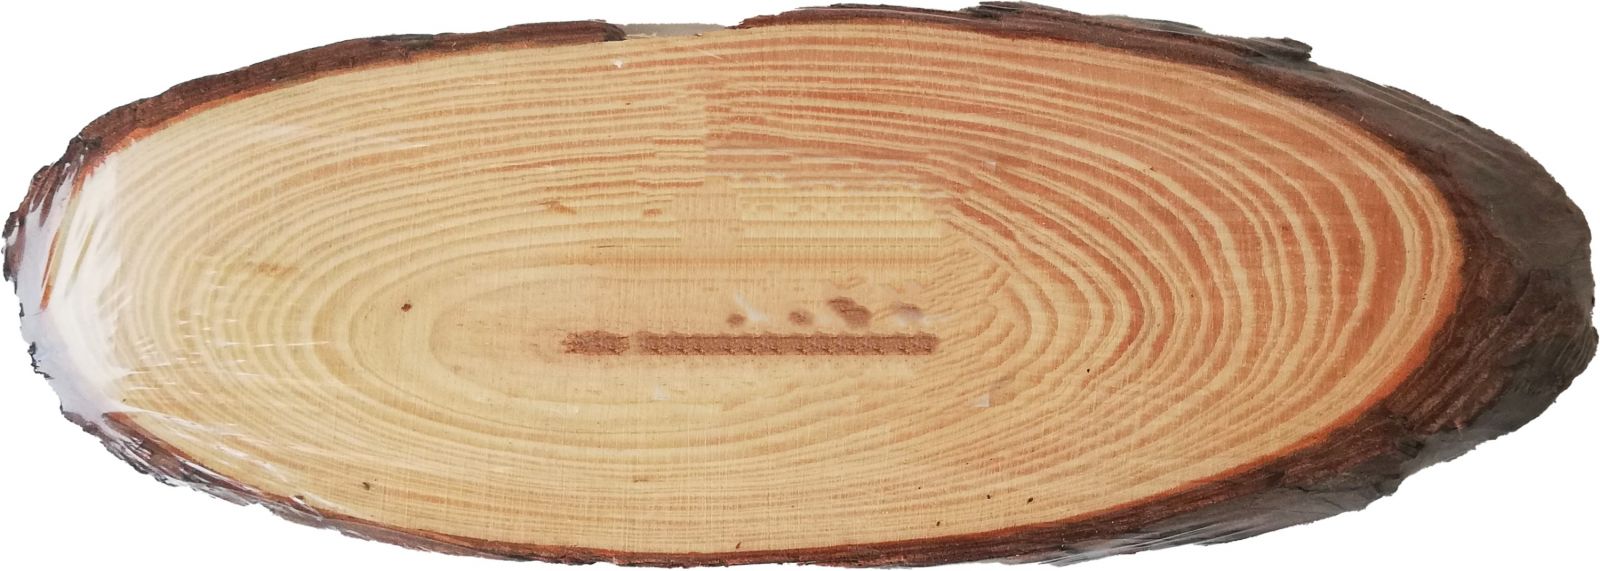 Dekorace přírodní dřevěné pláty/olše/ 20cm (+/- 3cm) x 6-8cm - 1ks